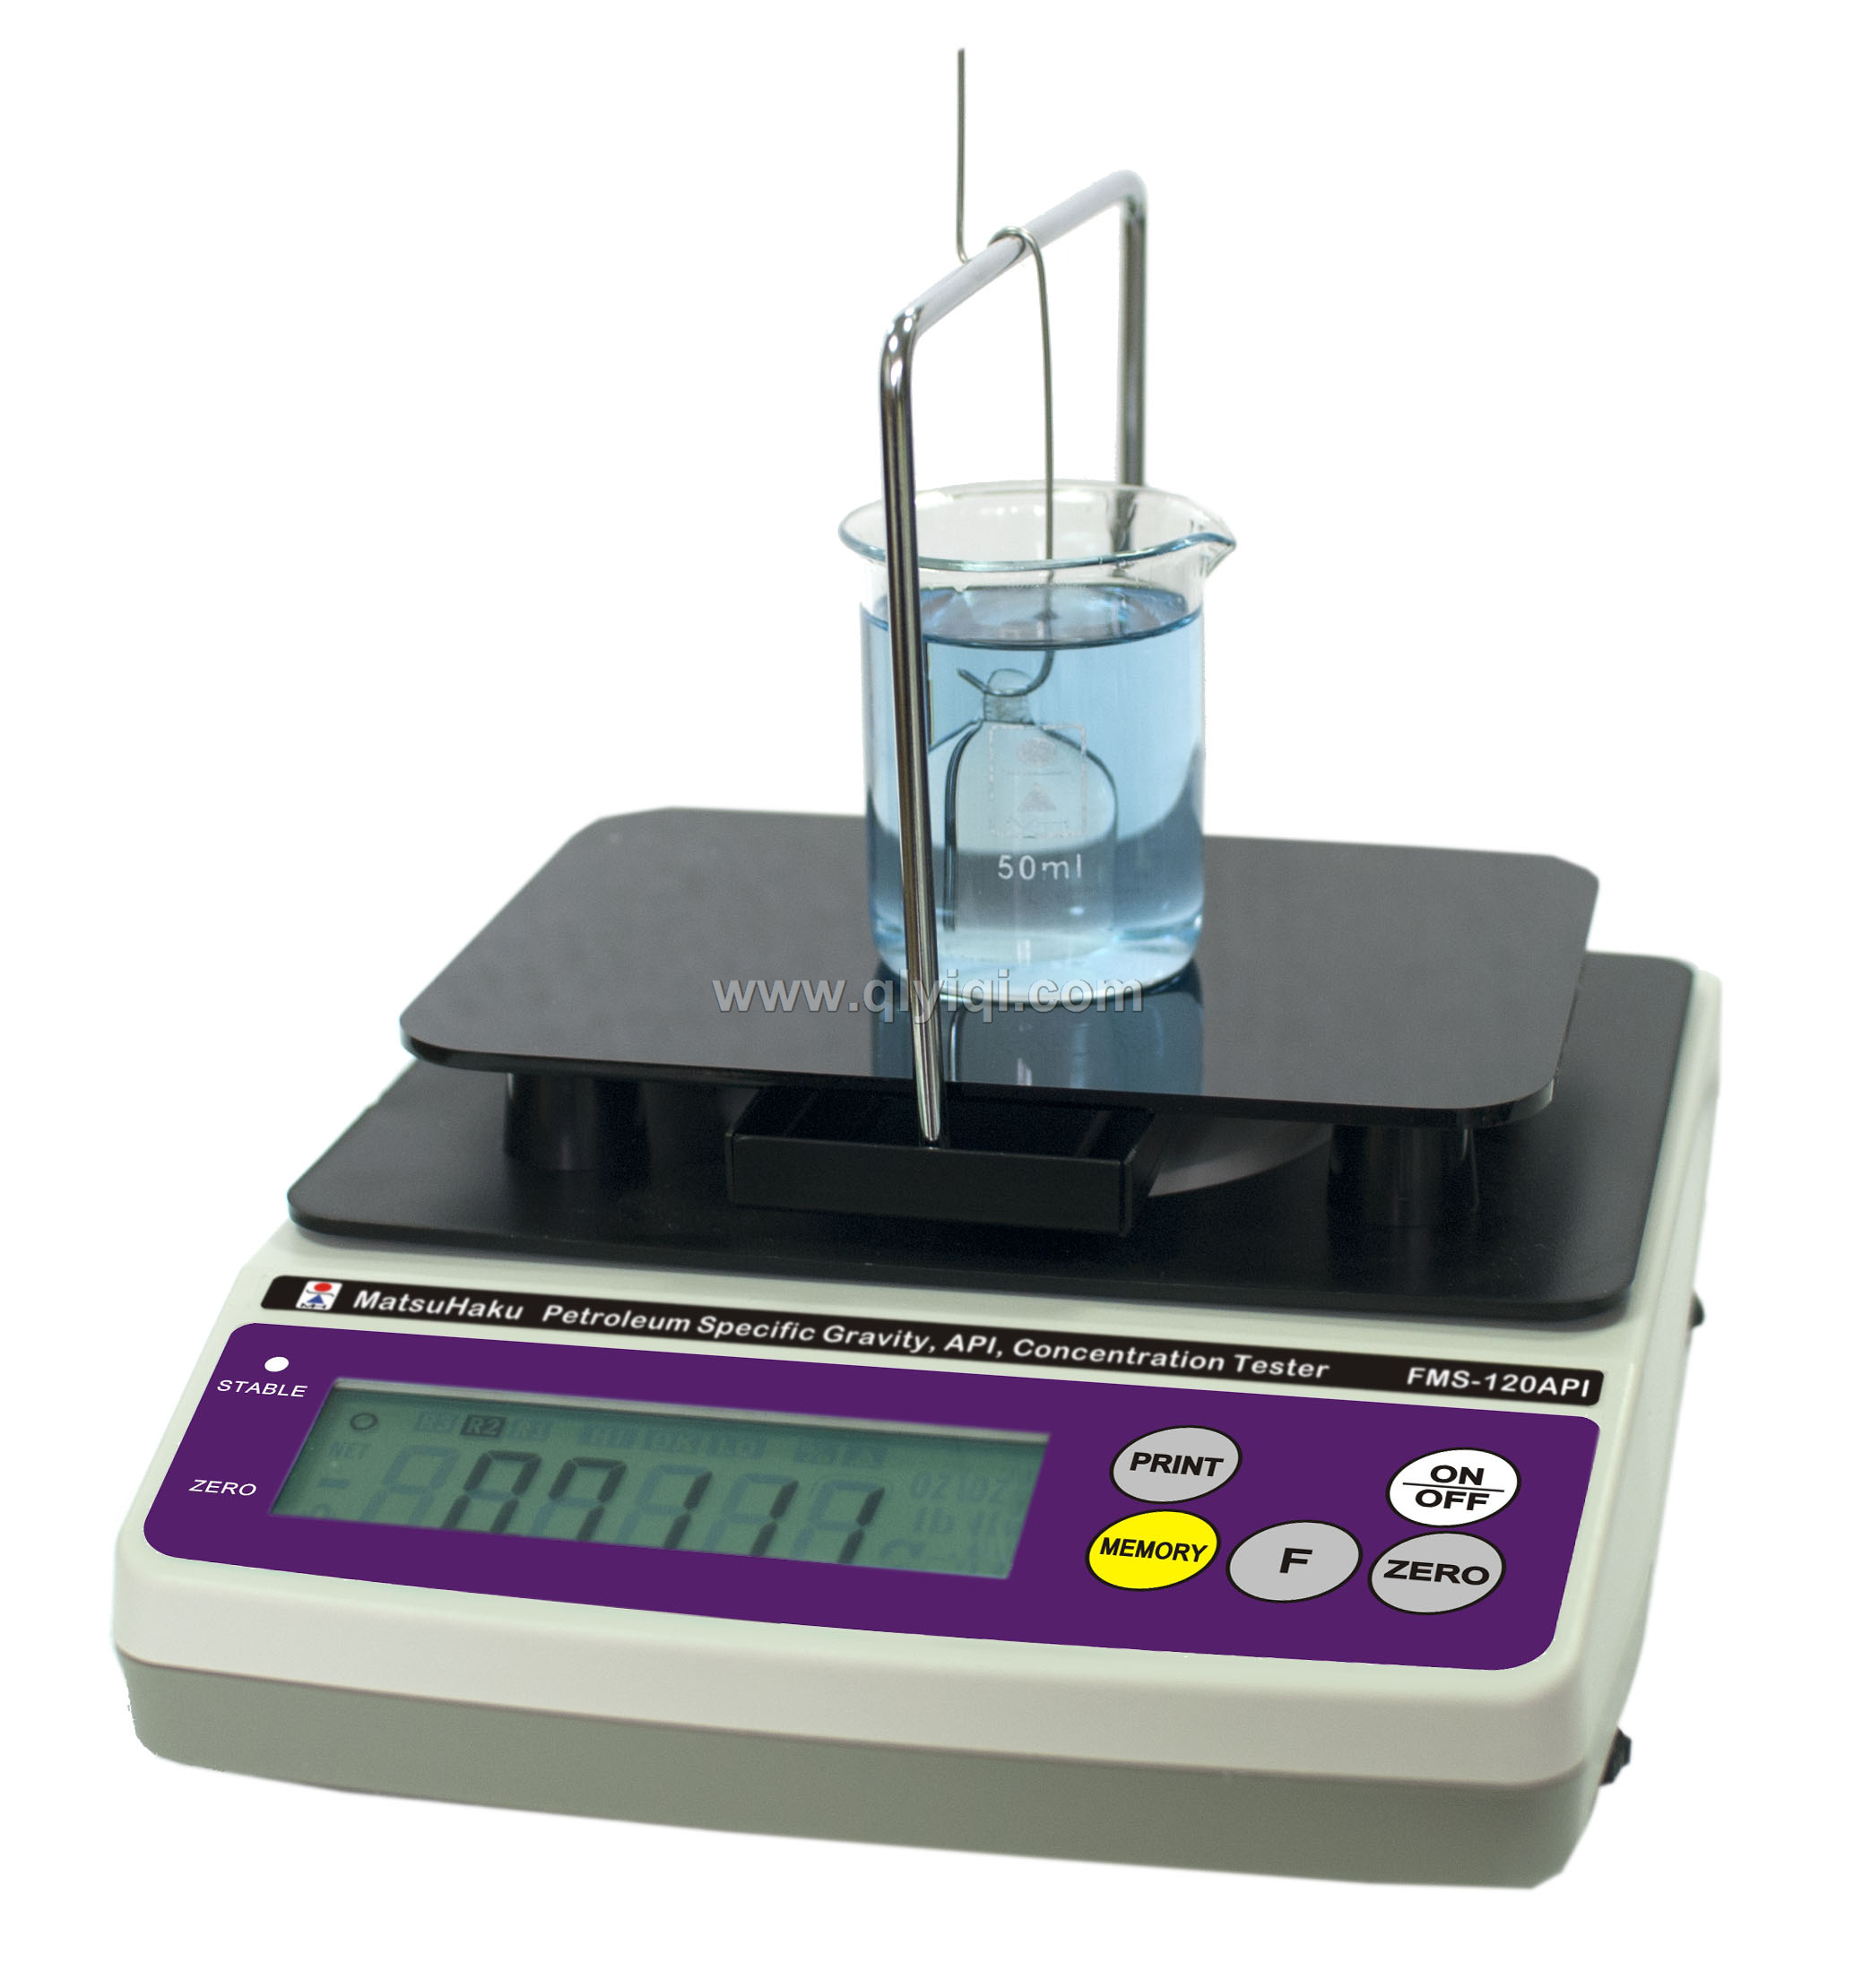 液体石油比重、API度、w/gal浓度测试仪 FMS-120API,